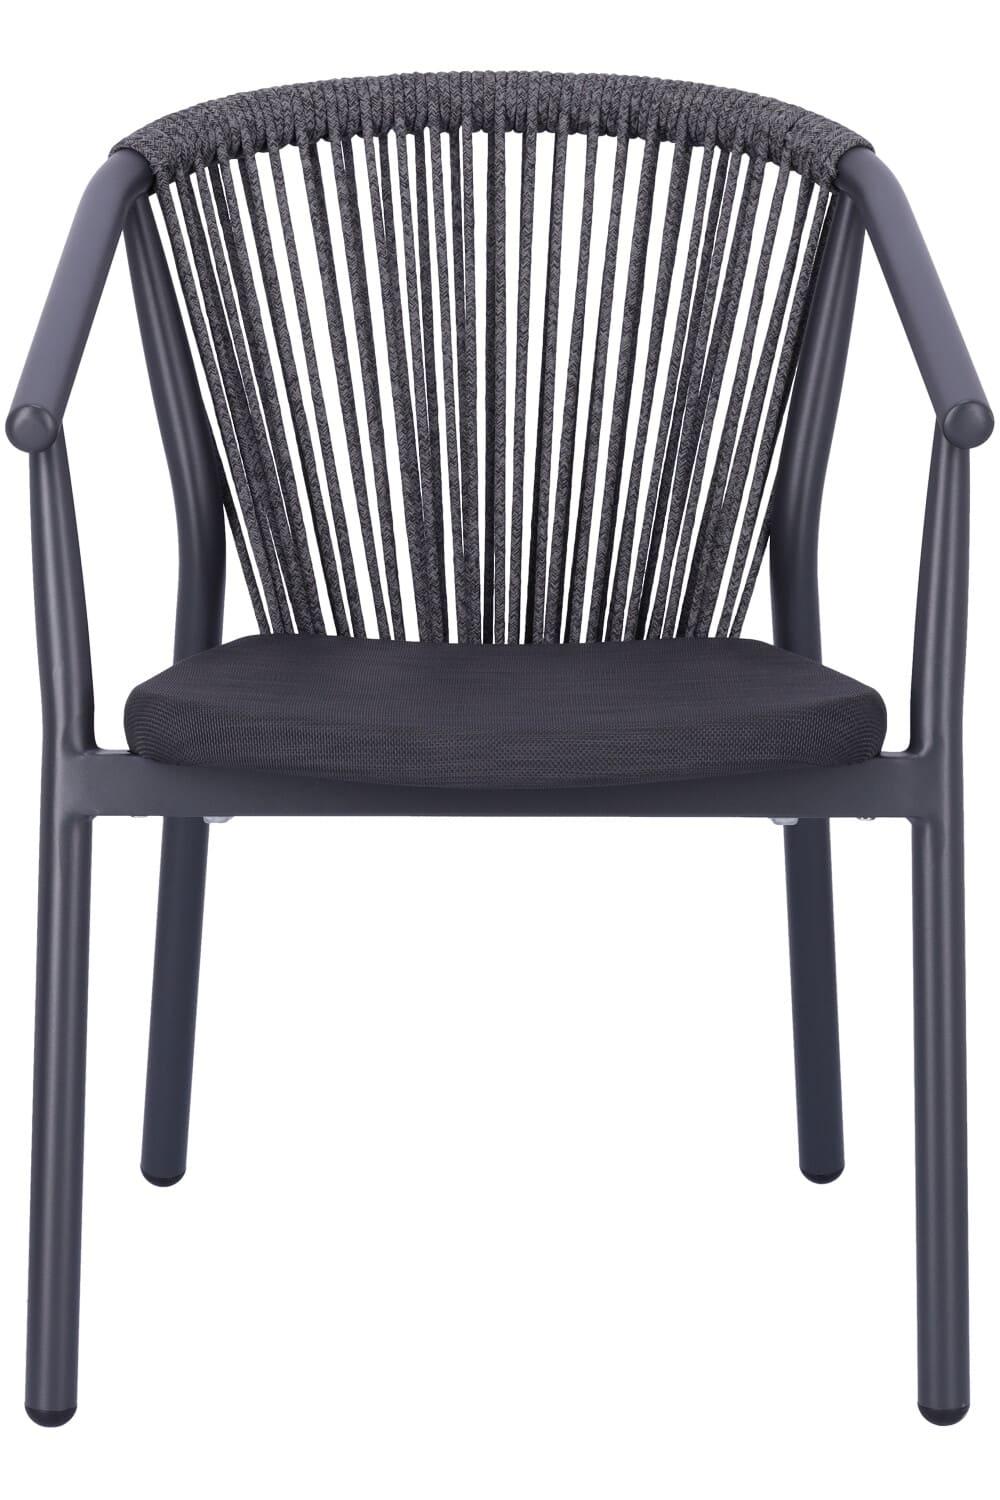 Abbildung arm chair Zaki Vorderansicht